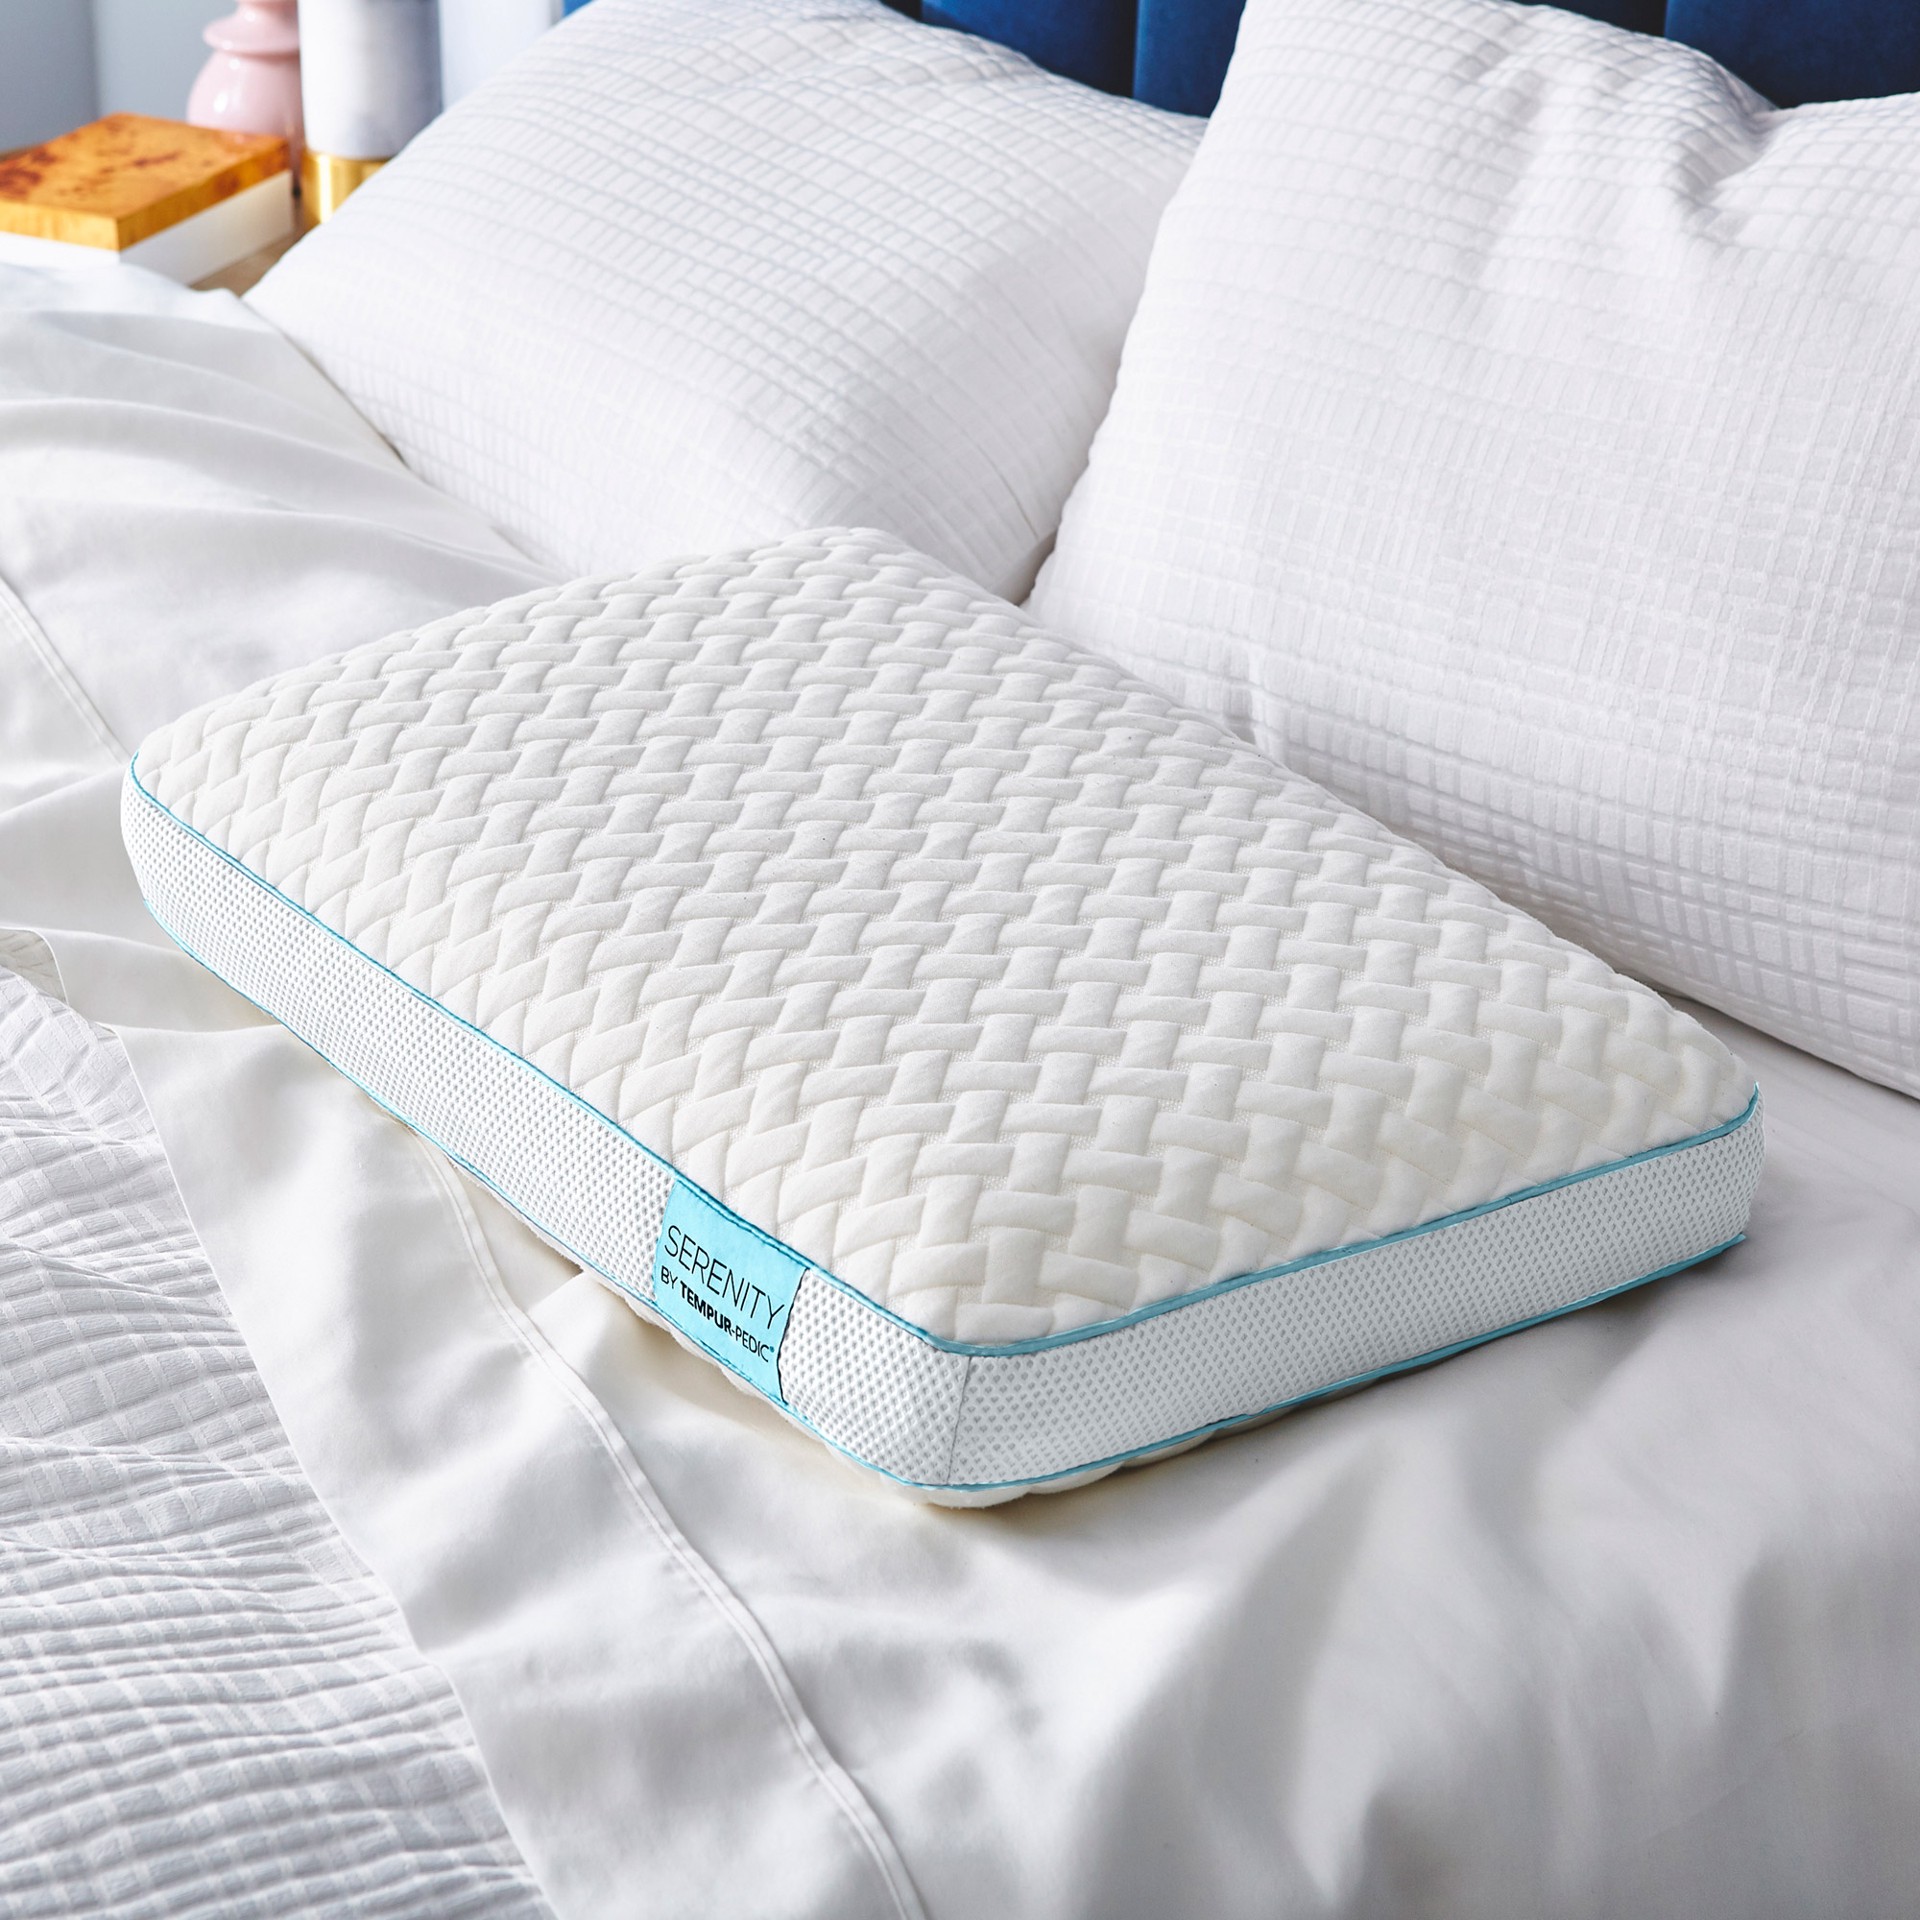 slide 1 of 4, Comfort Revolution Llc Serenity by Tempur-Pedic Memory Foam Bed Pillow, 1 ct